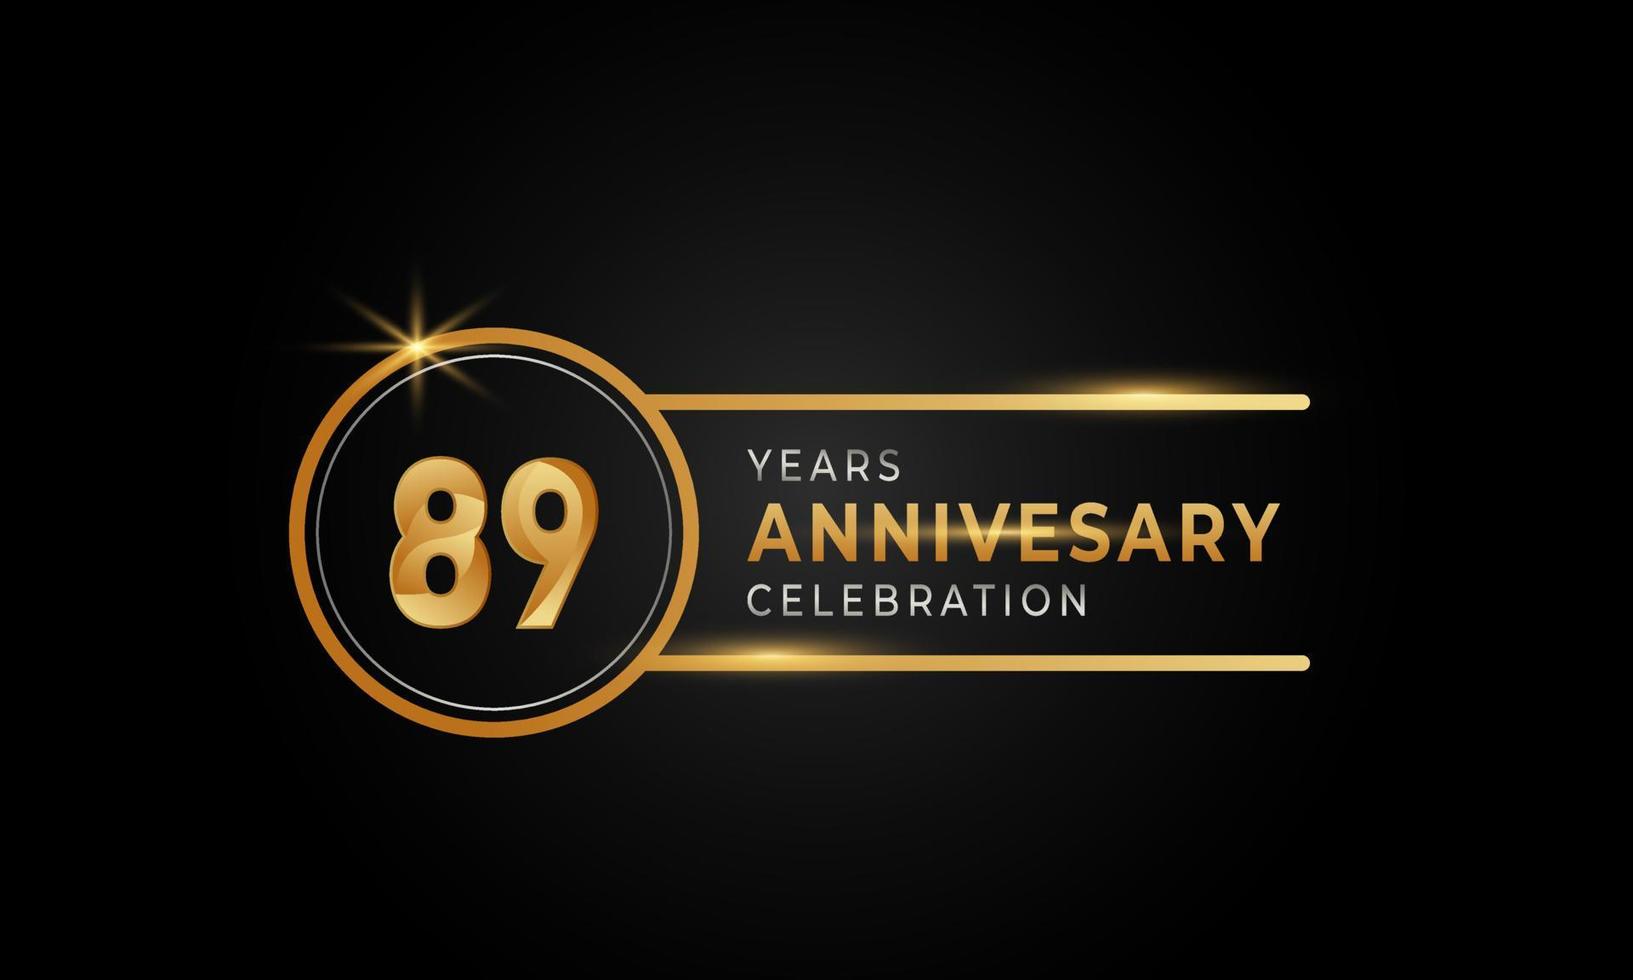 Celebración del aniversario de 89 años color dorado y plateado con anillo circular para evento de celebración, boda, tarjeta de felicitación e invitación aislada en fondo negro vector